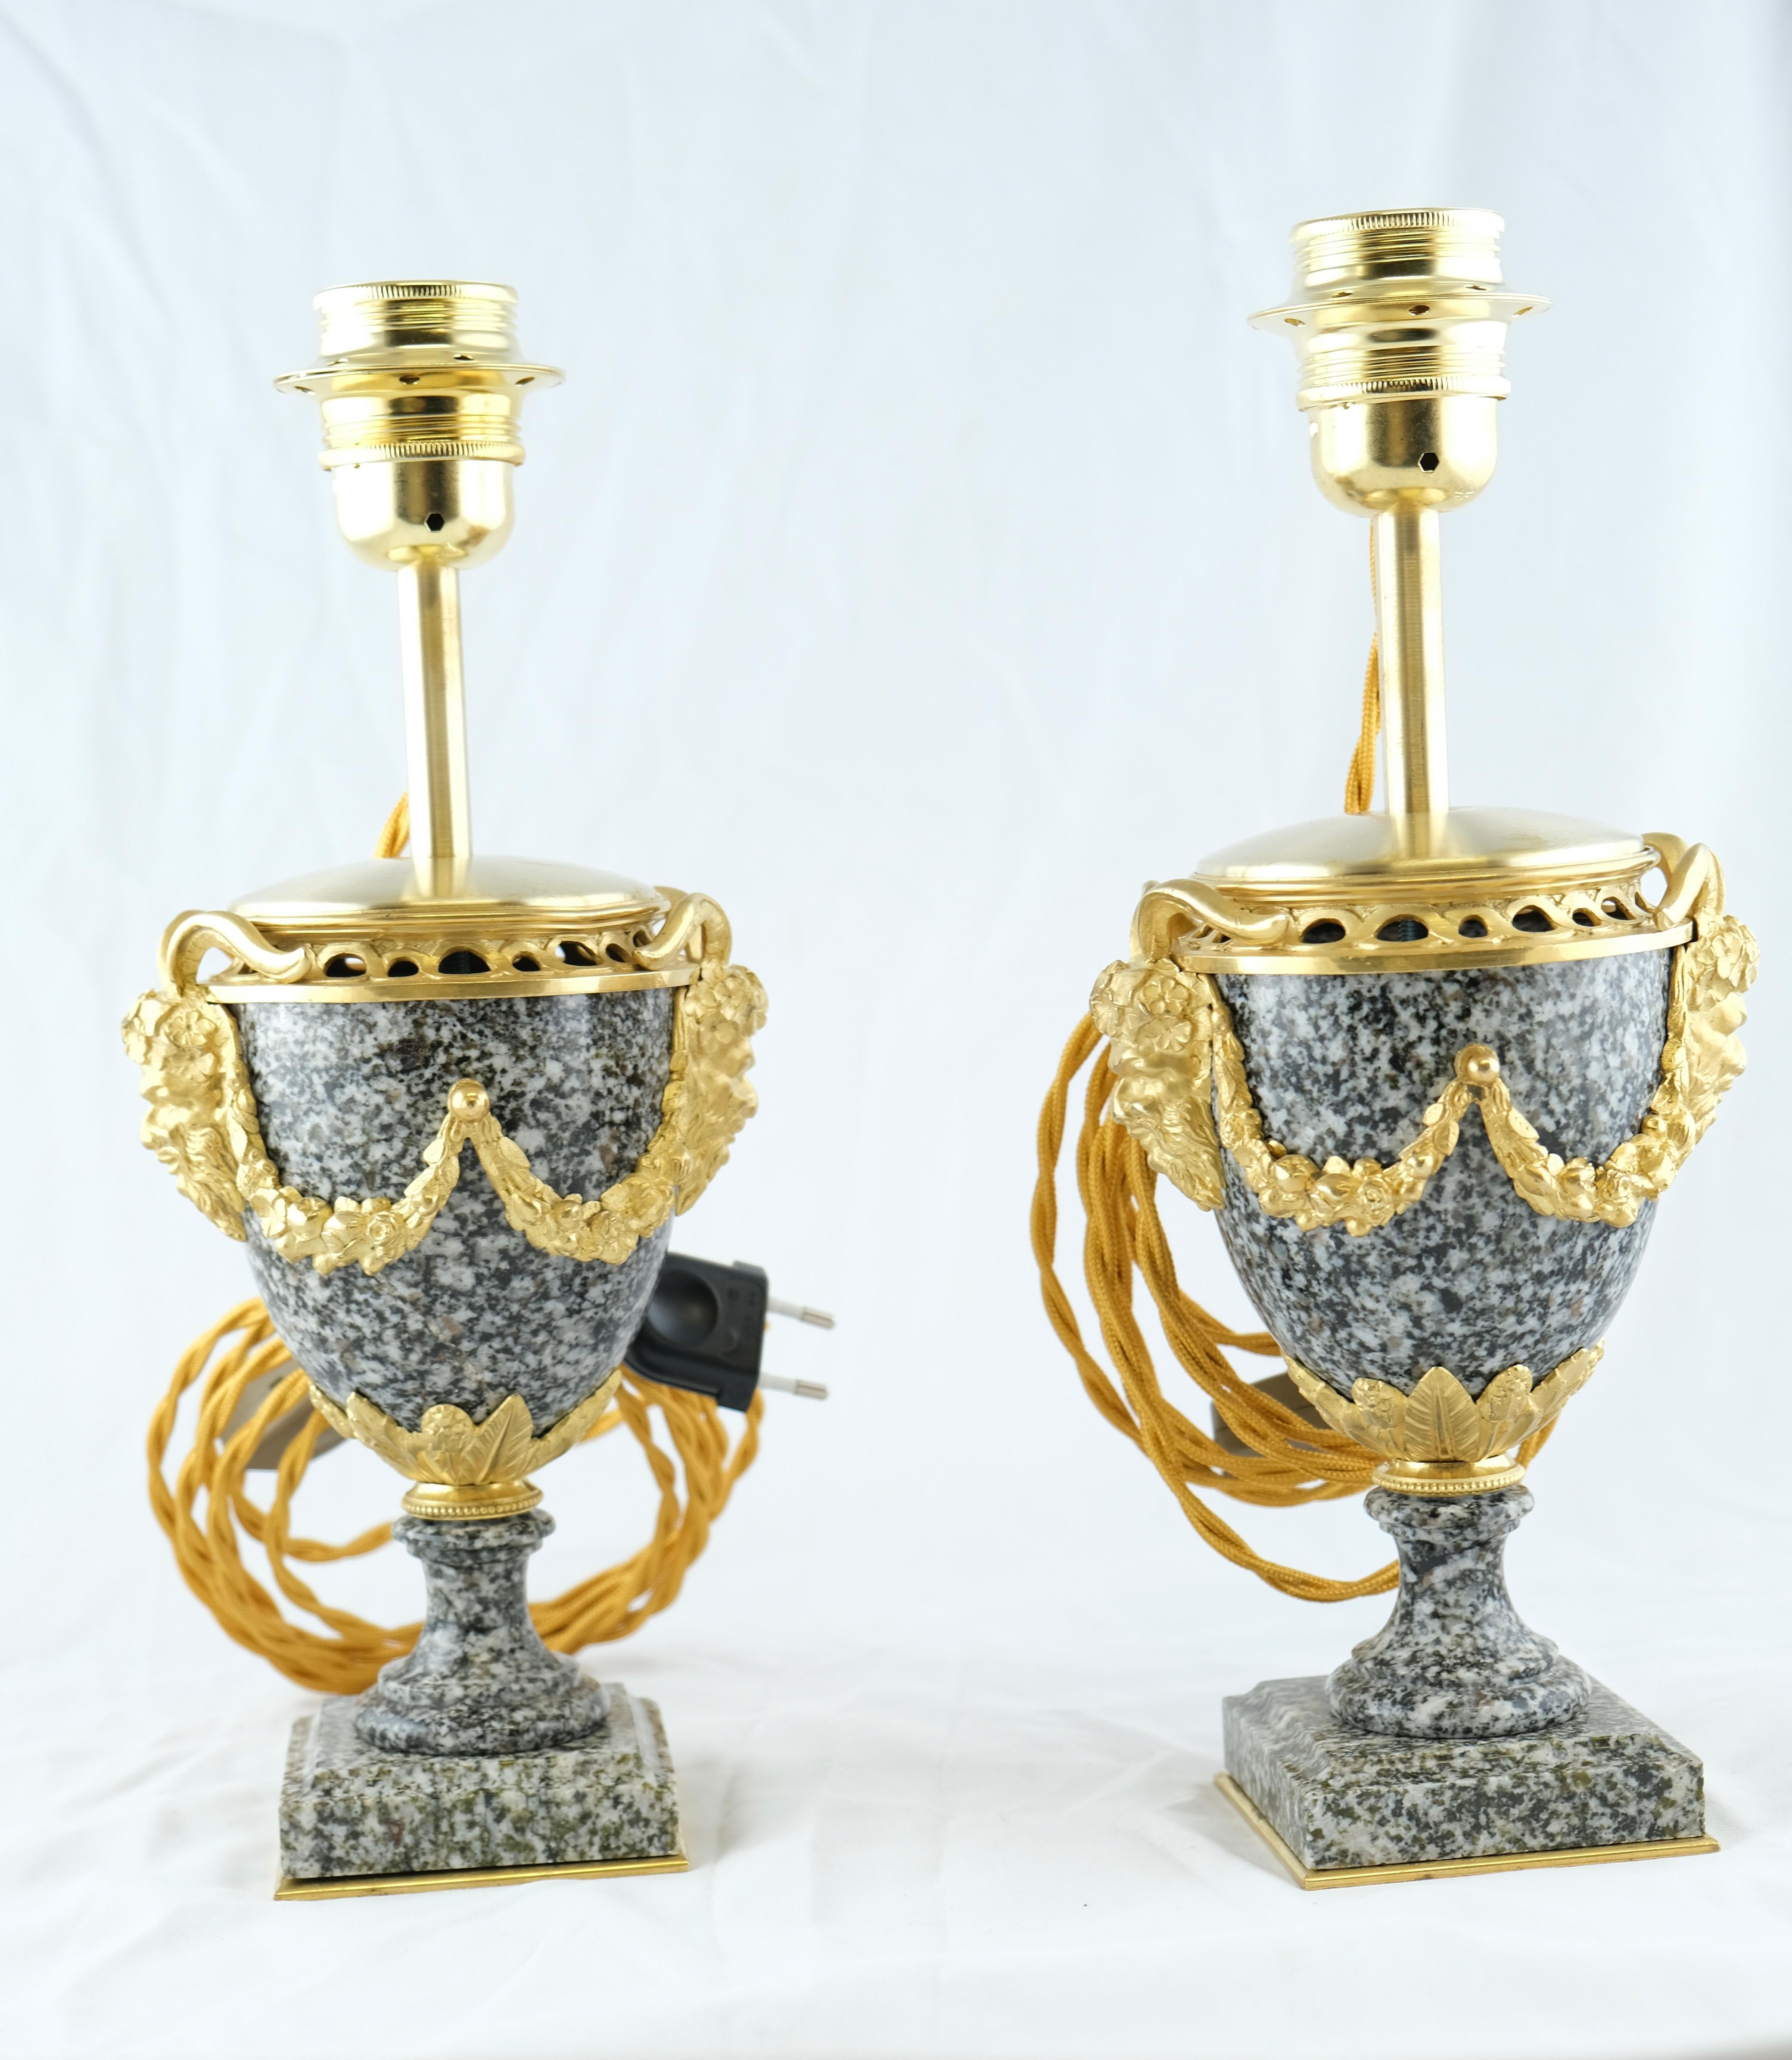 Une belle paire d'urnes en granit montées avec des décorations en bronze doré. Les urnes sont électrifiées et montées comme des lampes. Les bronzes sont de bonne qualité ainsi que les urnes en granit.
 